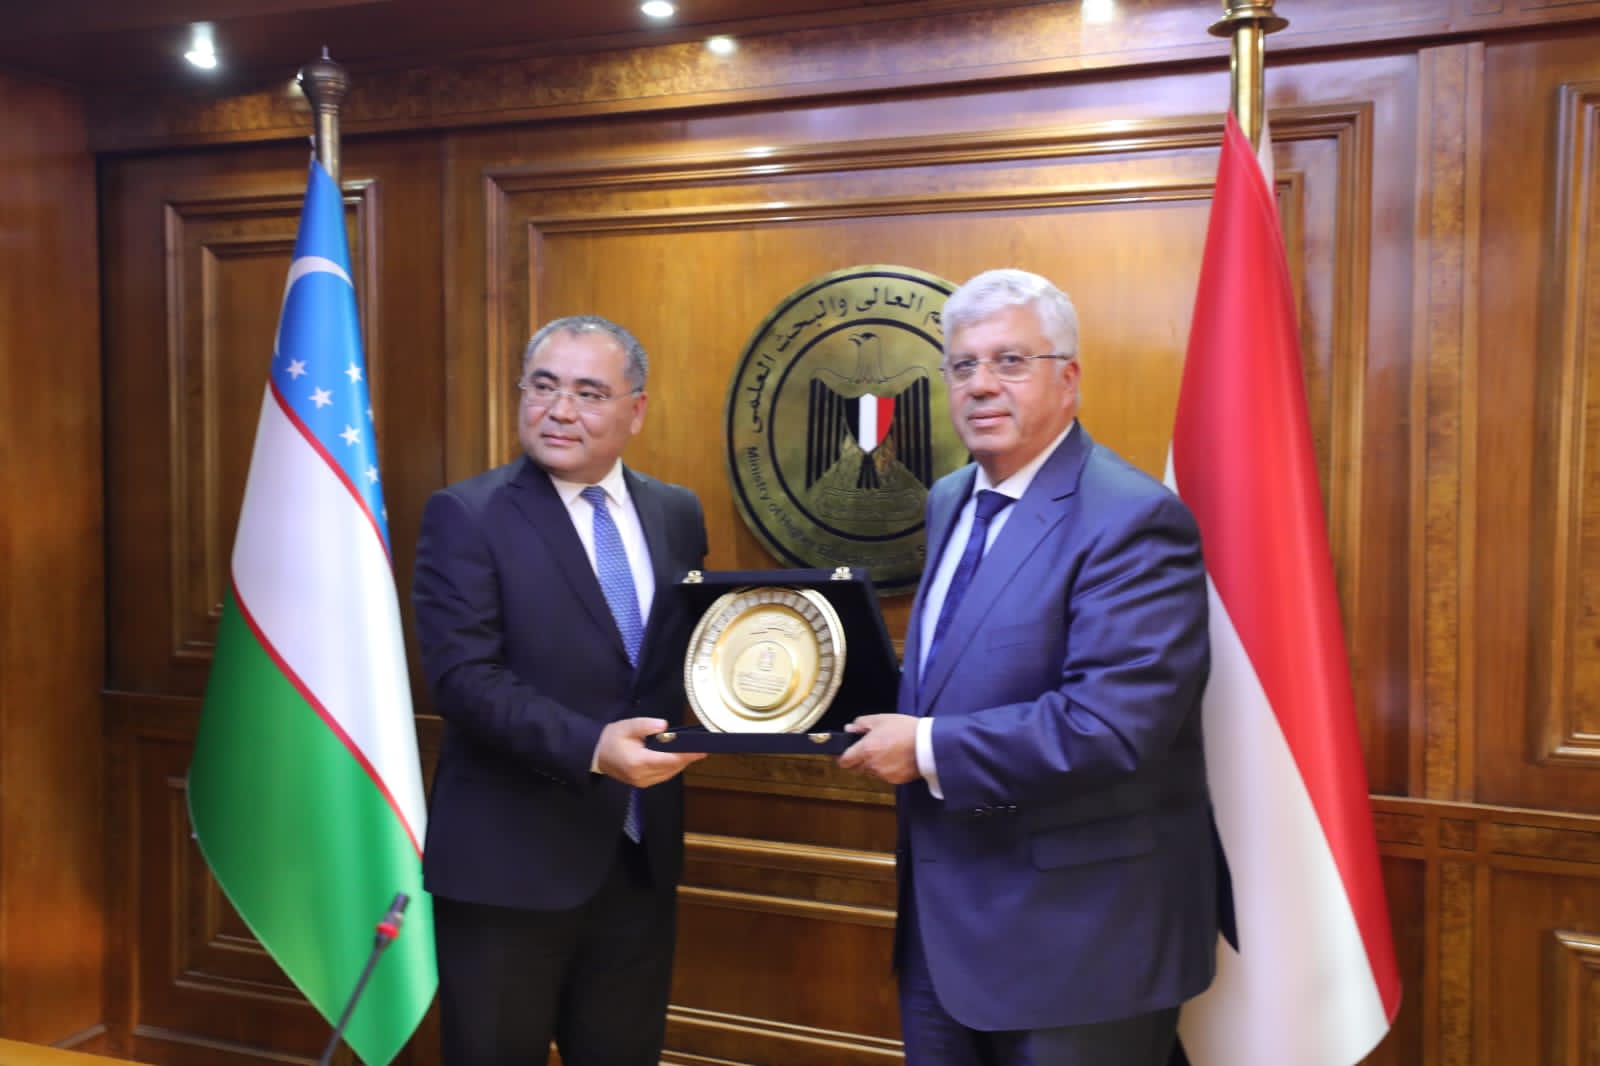 وزير التعليم العالي يوقع بروتوكول تعاون مع أوزبكستان في مجال العلوم والتكنولوجيا والابتكار